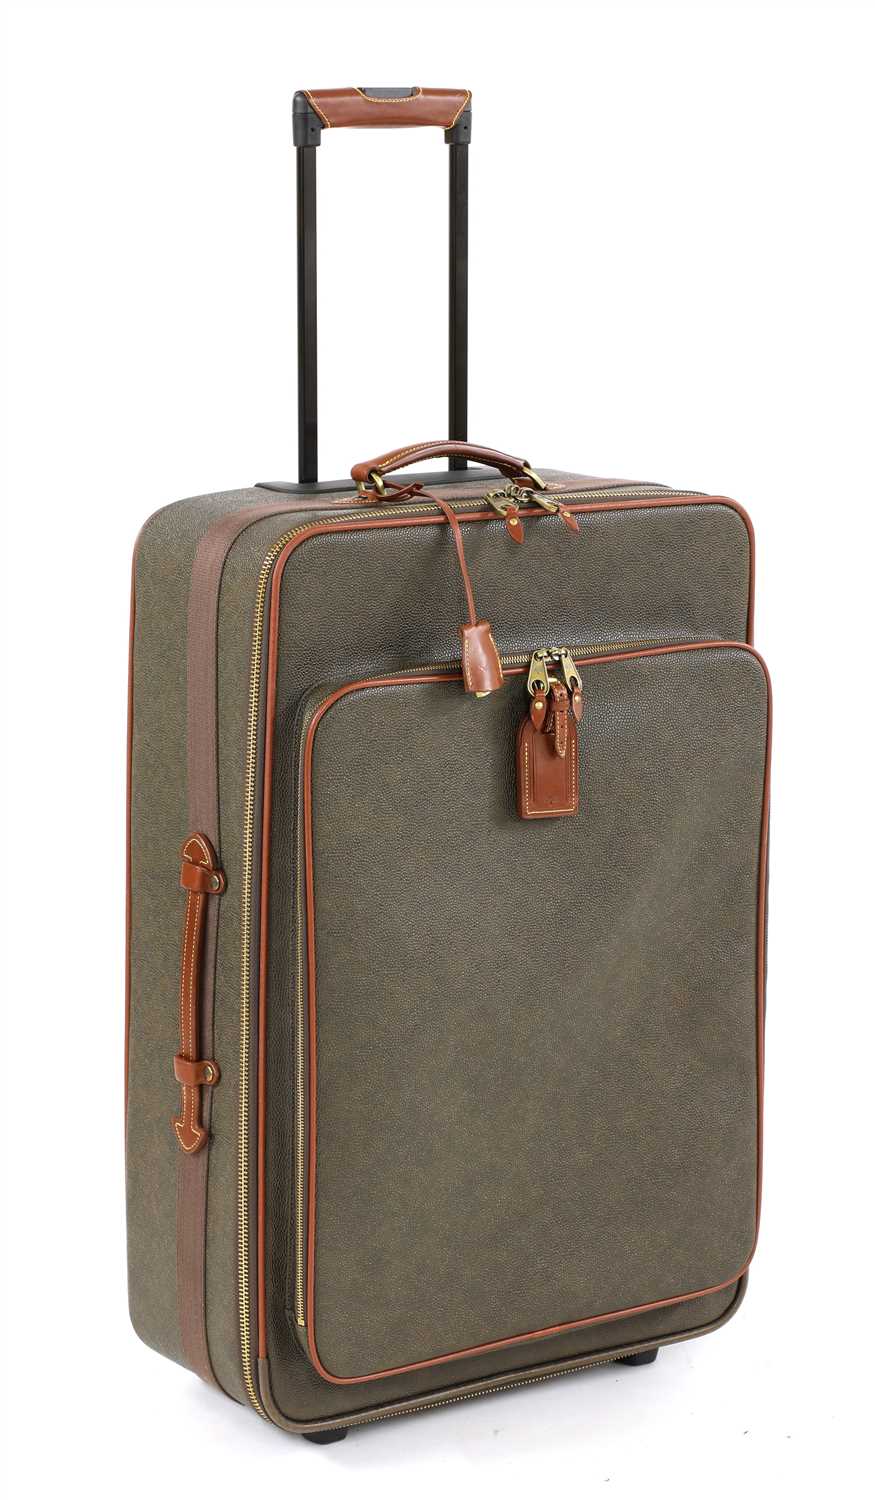 Lot 713 - A Mulberry Scotchgrain large suitcase